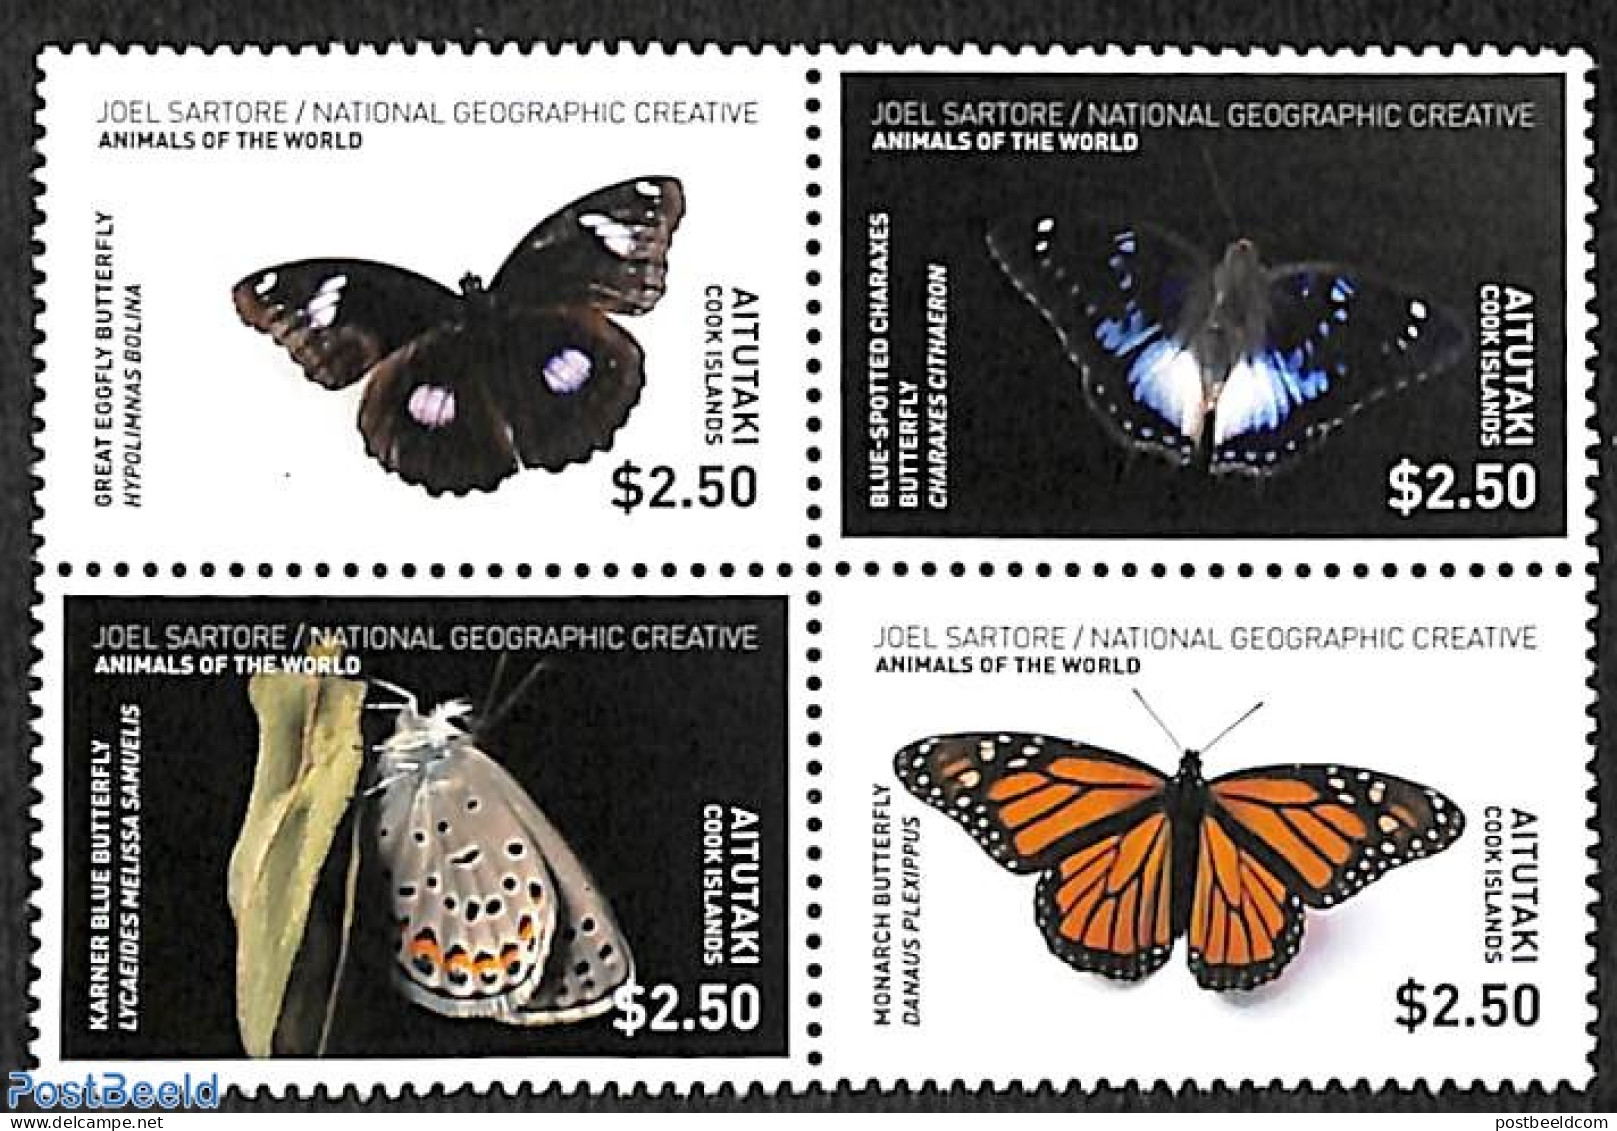 Aitutaki 2017 Butterflies 4v [+], Mint NH, Nature - Butterflies - Aitutaki